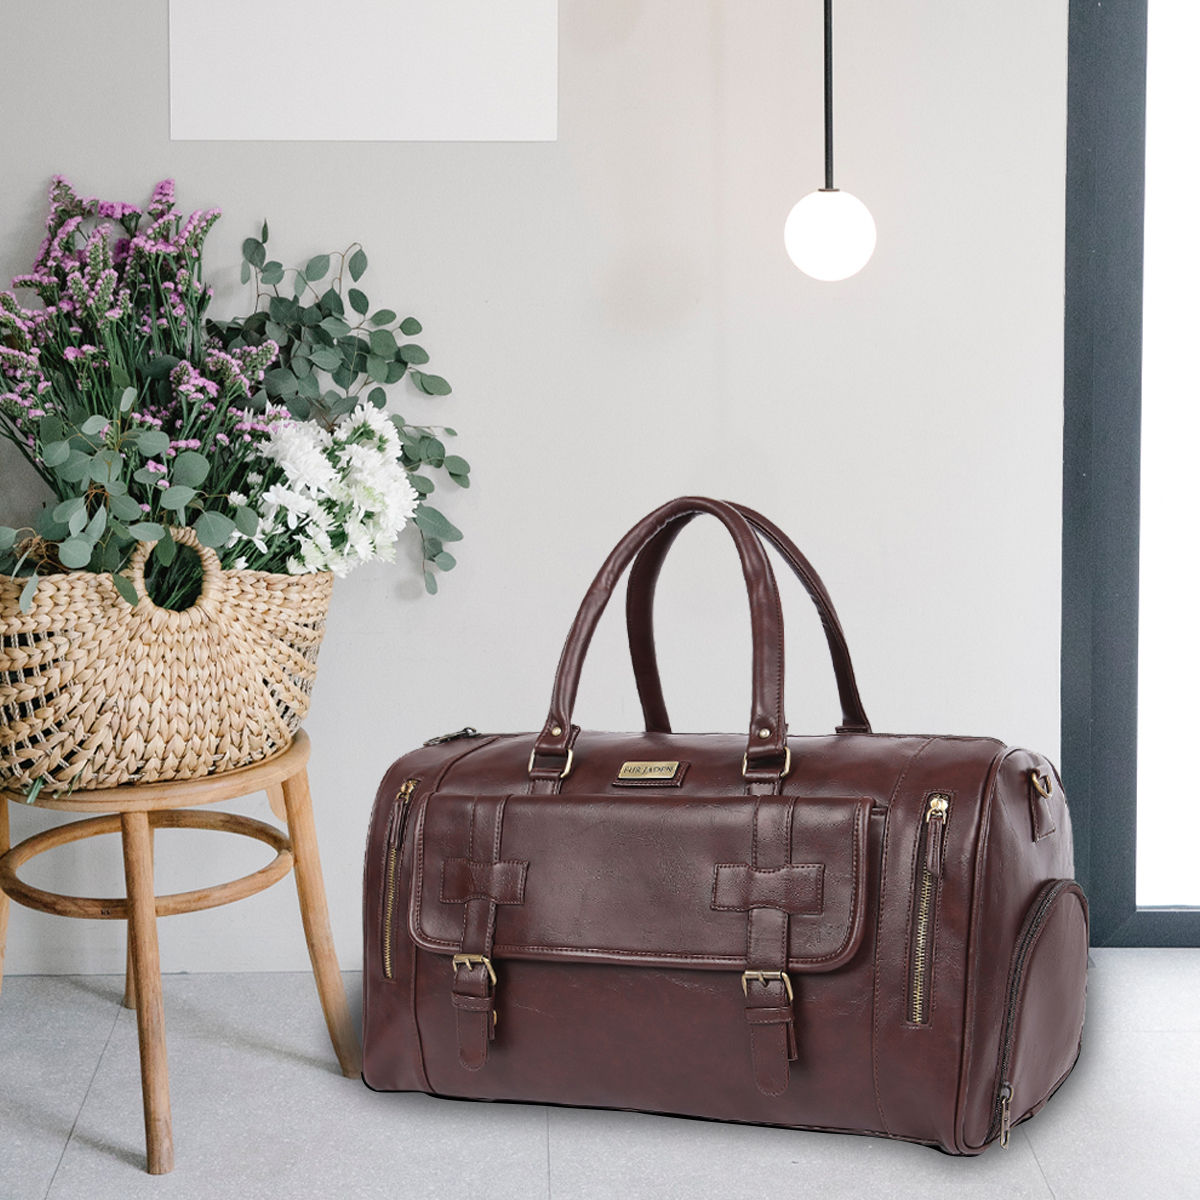 Buy FUR JADEN Brown Travel Duffle Bag With Shoe Pocket Online